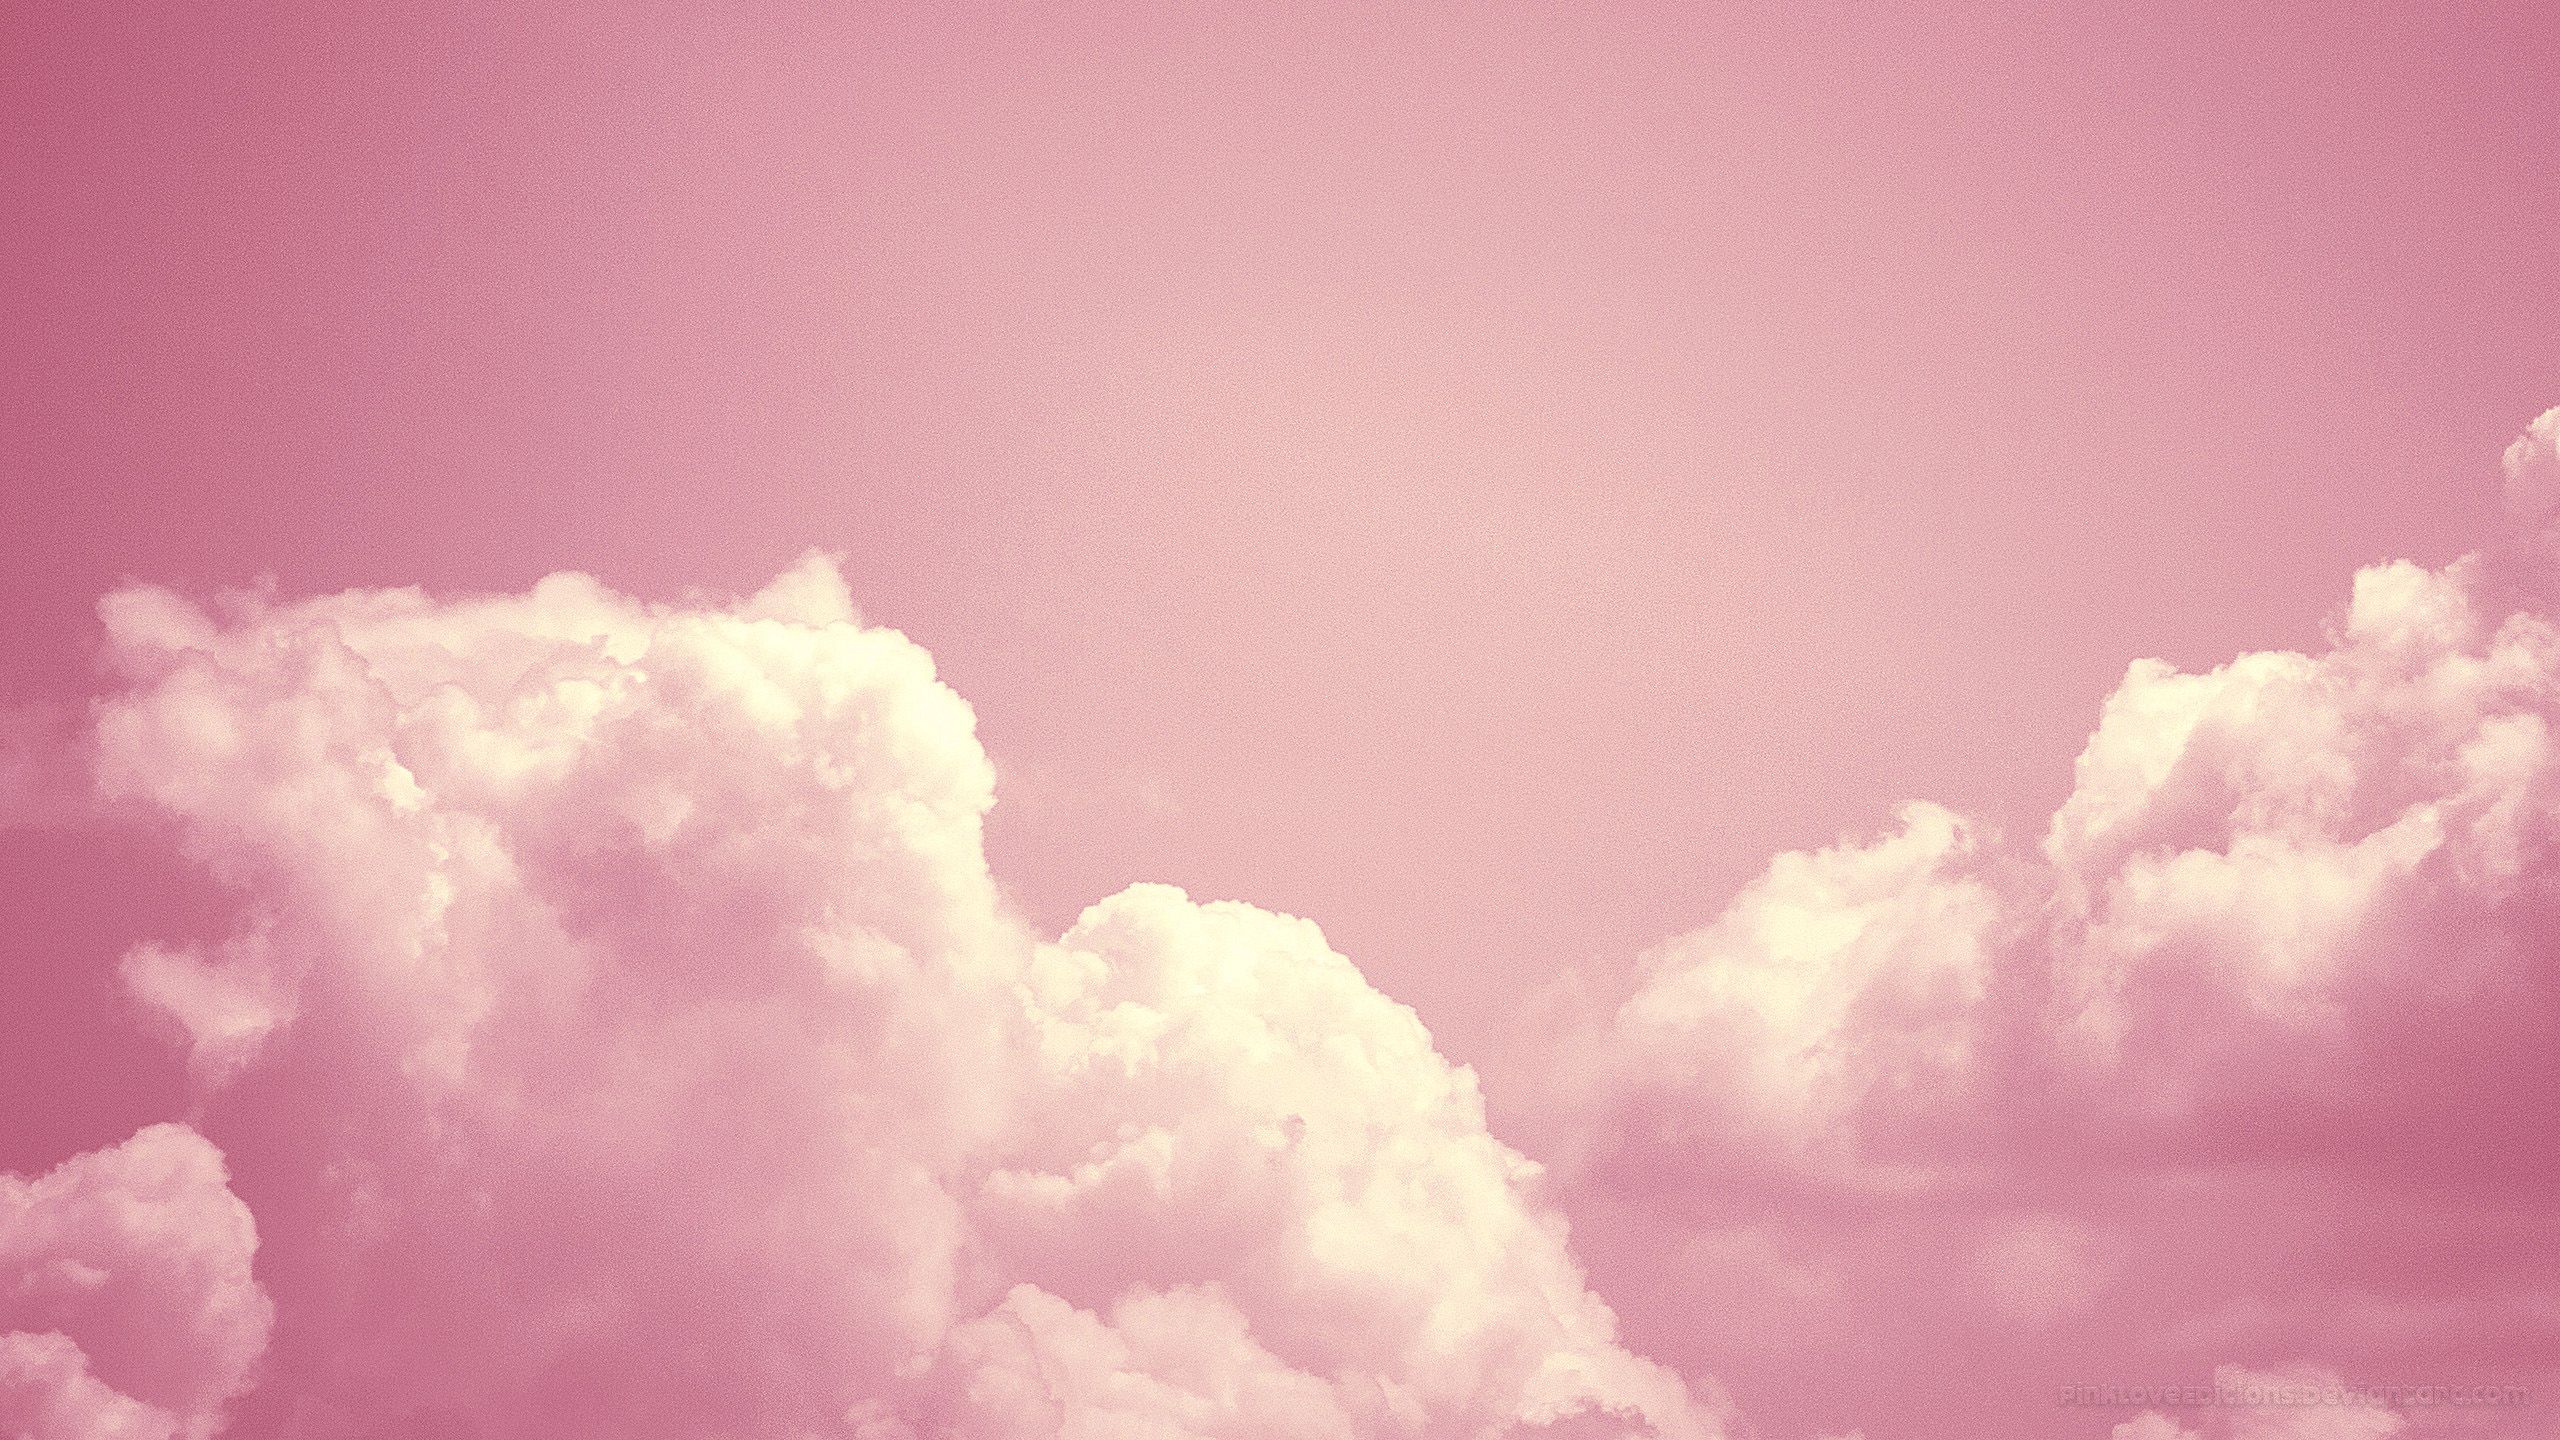 Hình nền desktop mây hồng đầy mê hoặc này là điều hoàn hảo để thăm quan vào bất cứ lúc nào. Màu hồng nhẹ nhàng của mây kết hợp với màu nắng đẹp tạo nên một bầu không khí vô cùng tuyệt vời.